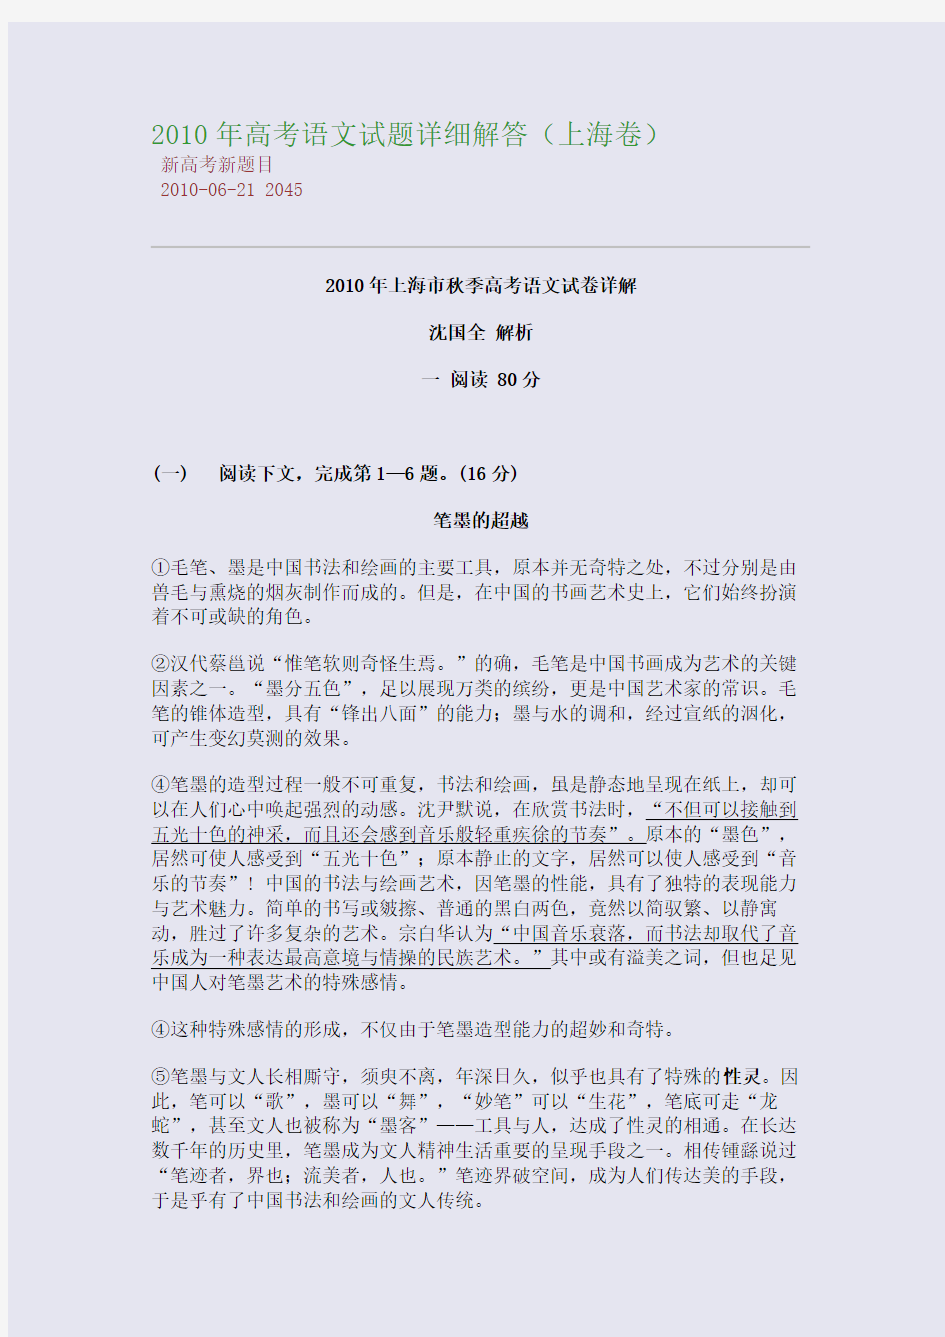 2010年高考语文试题详细解答(上海卷)